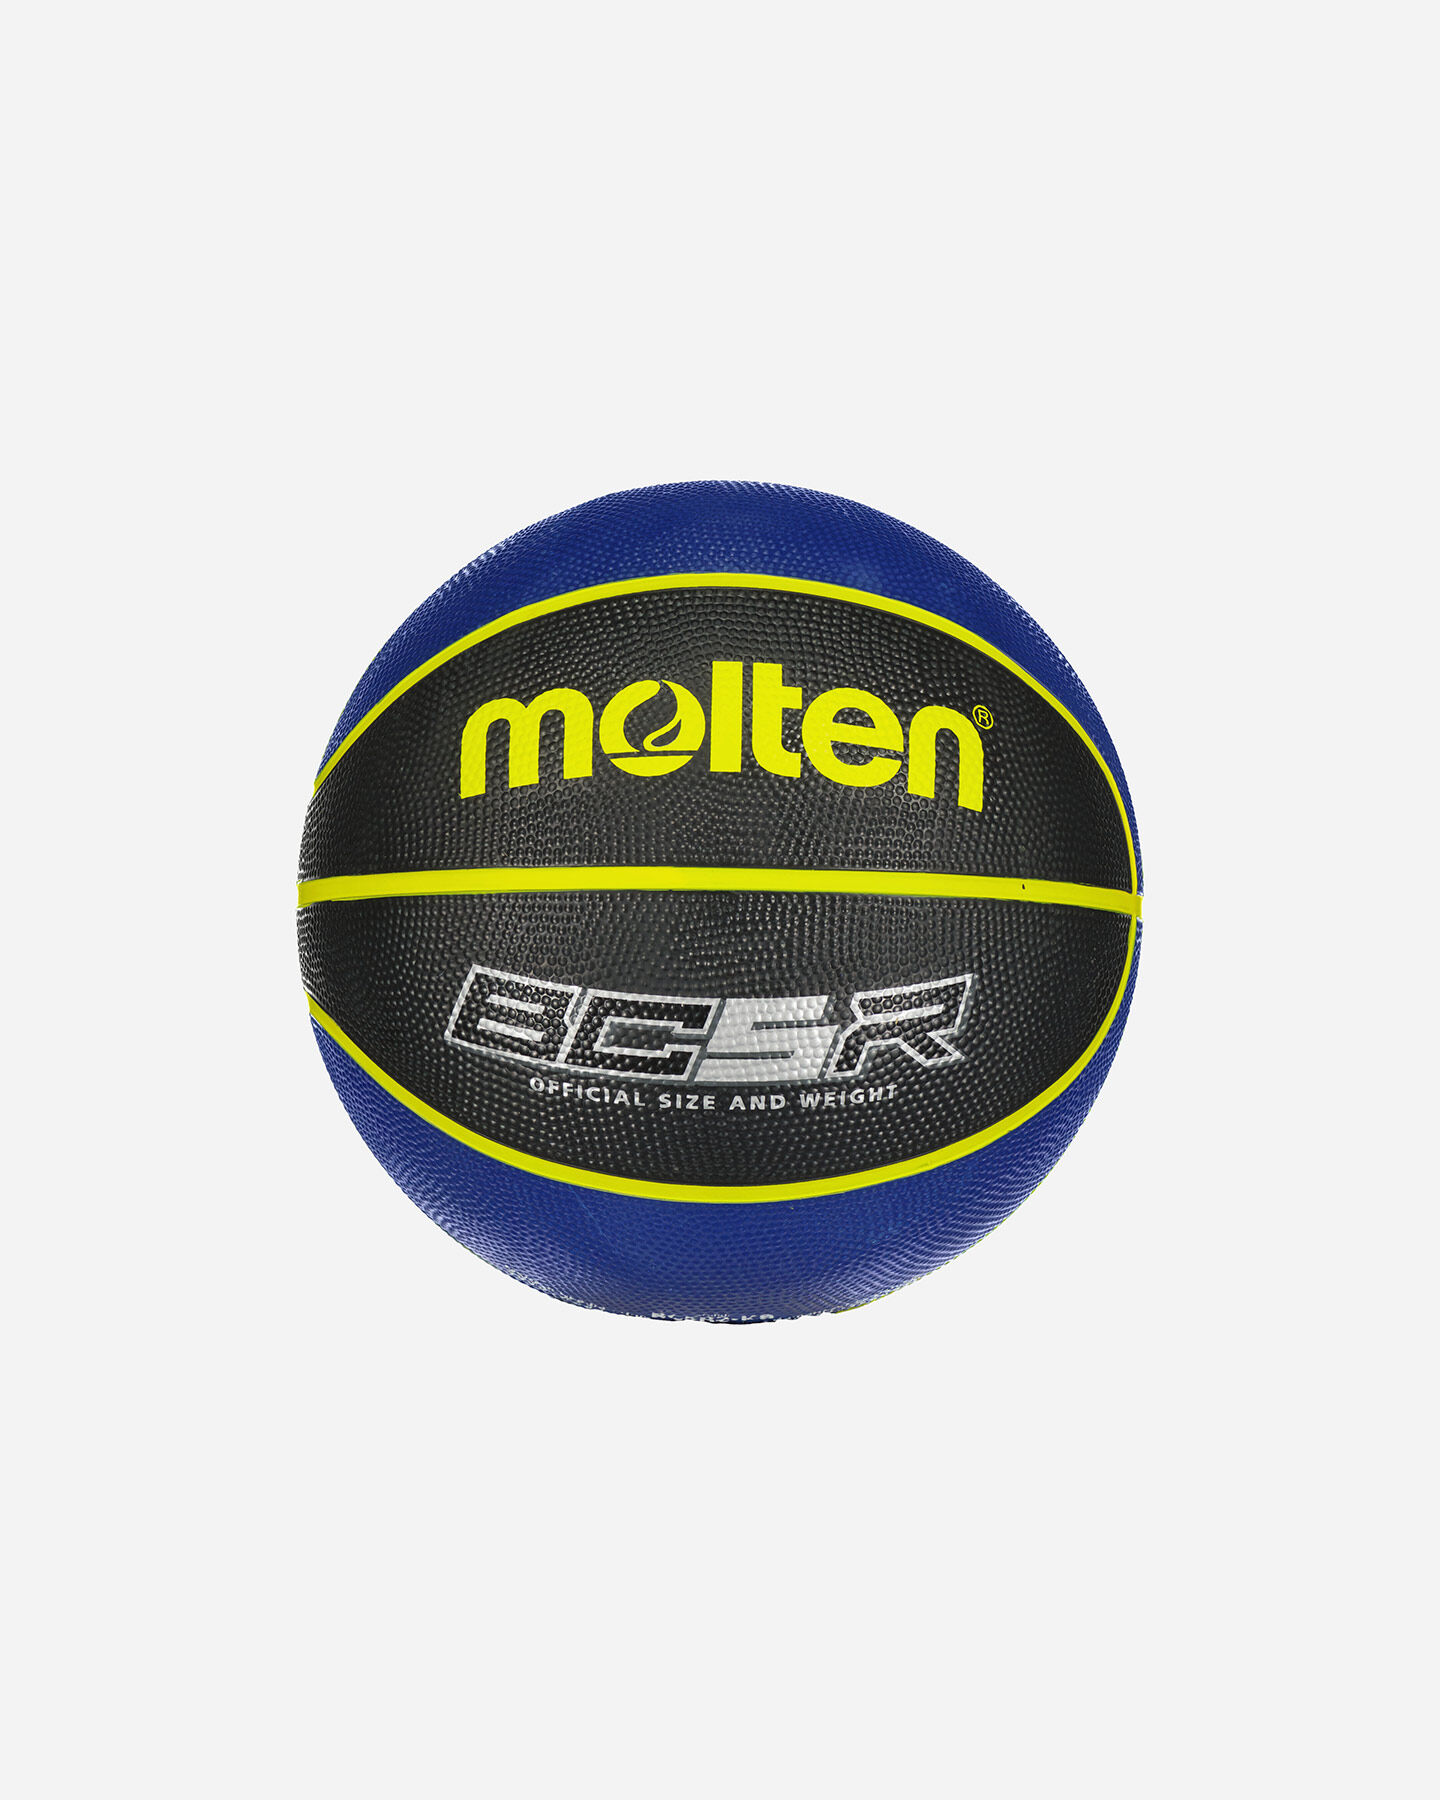  Pallone basket MOLTEN BC5R SZ.5  S4127203|UNI|5 scatto 0